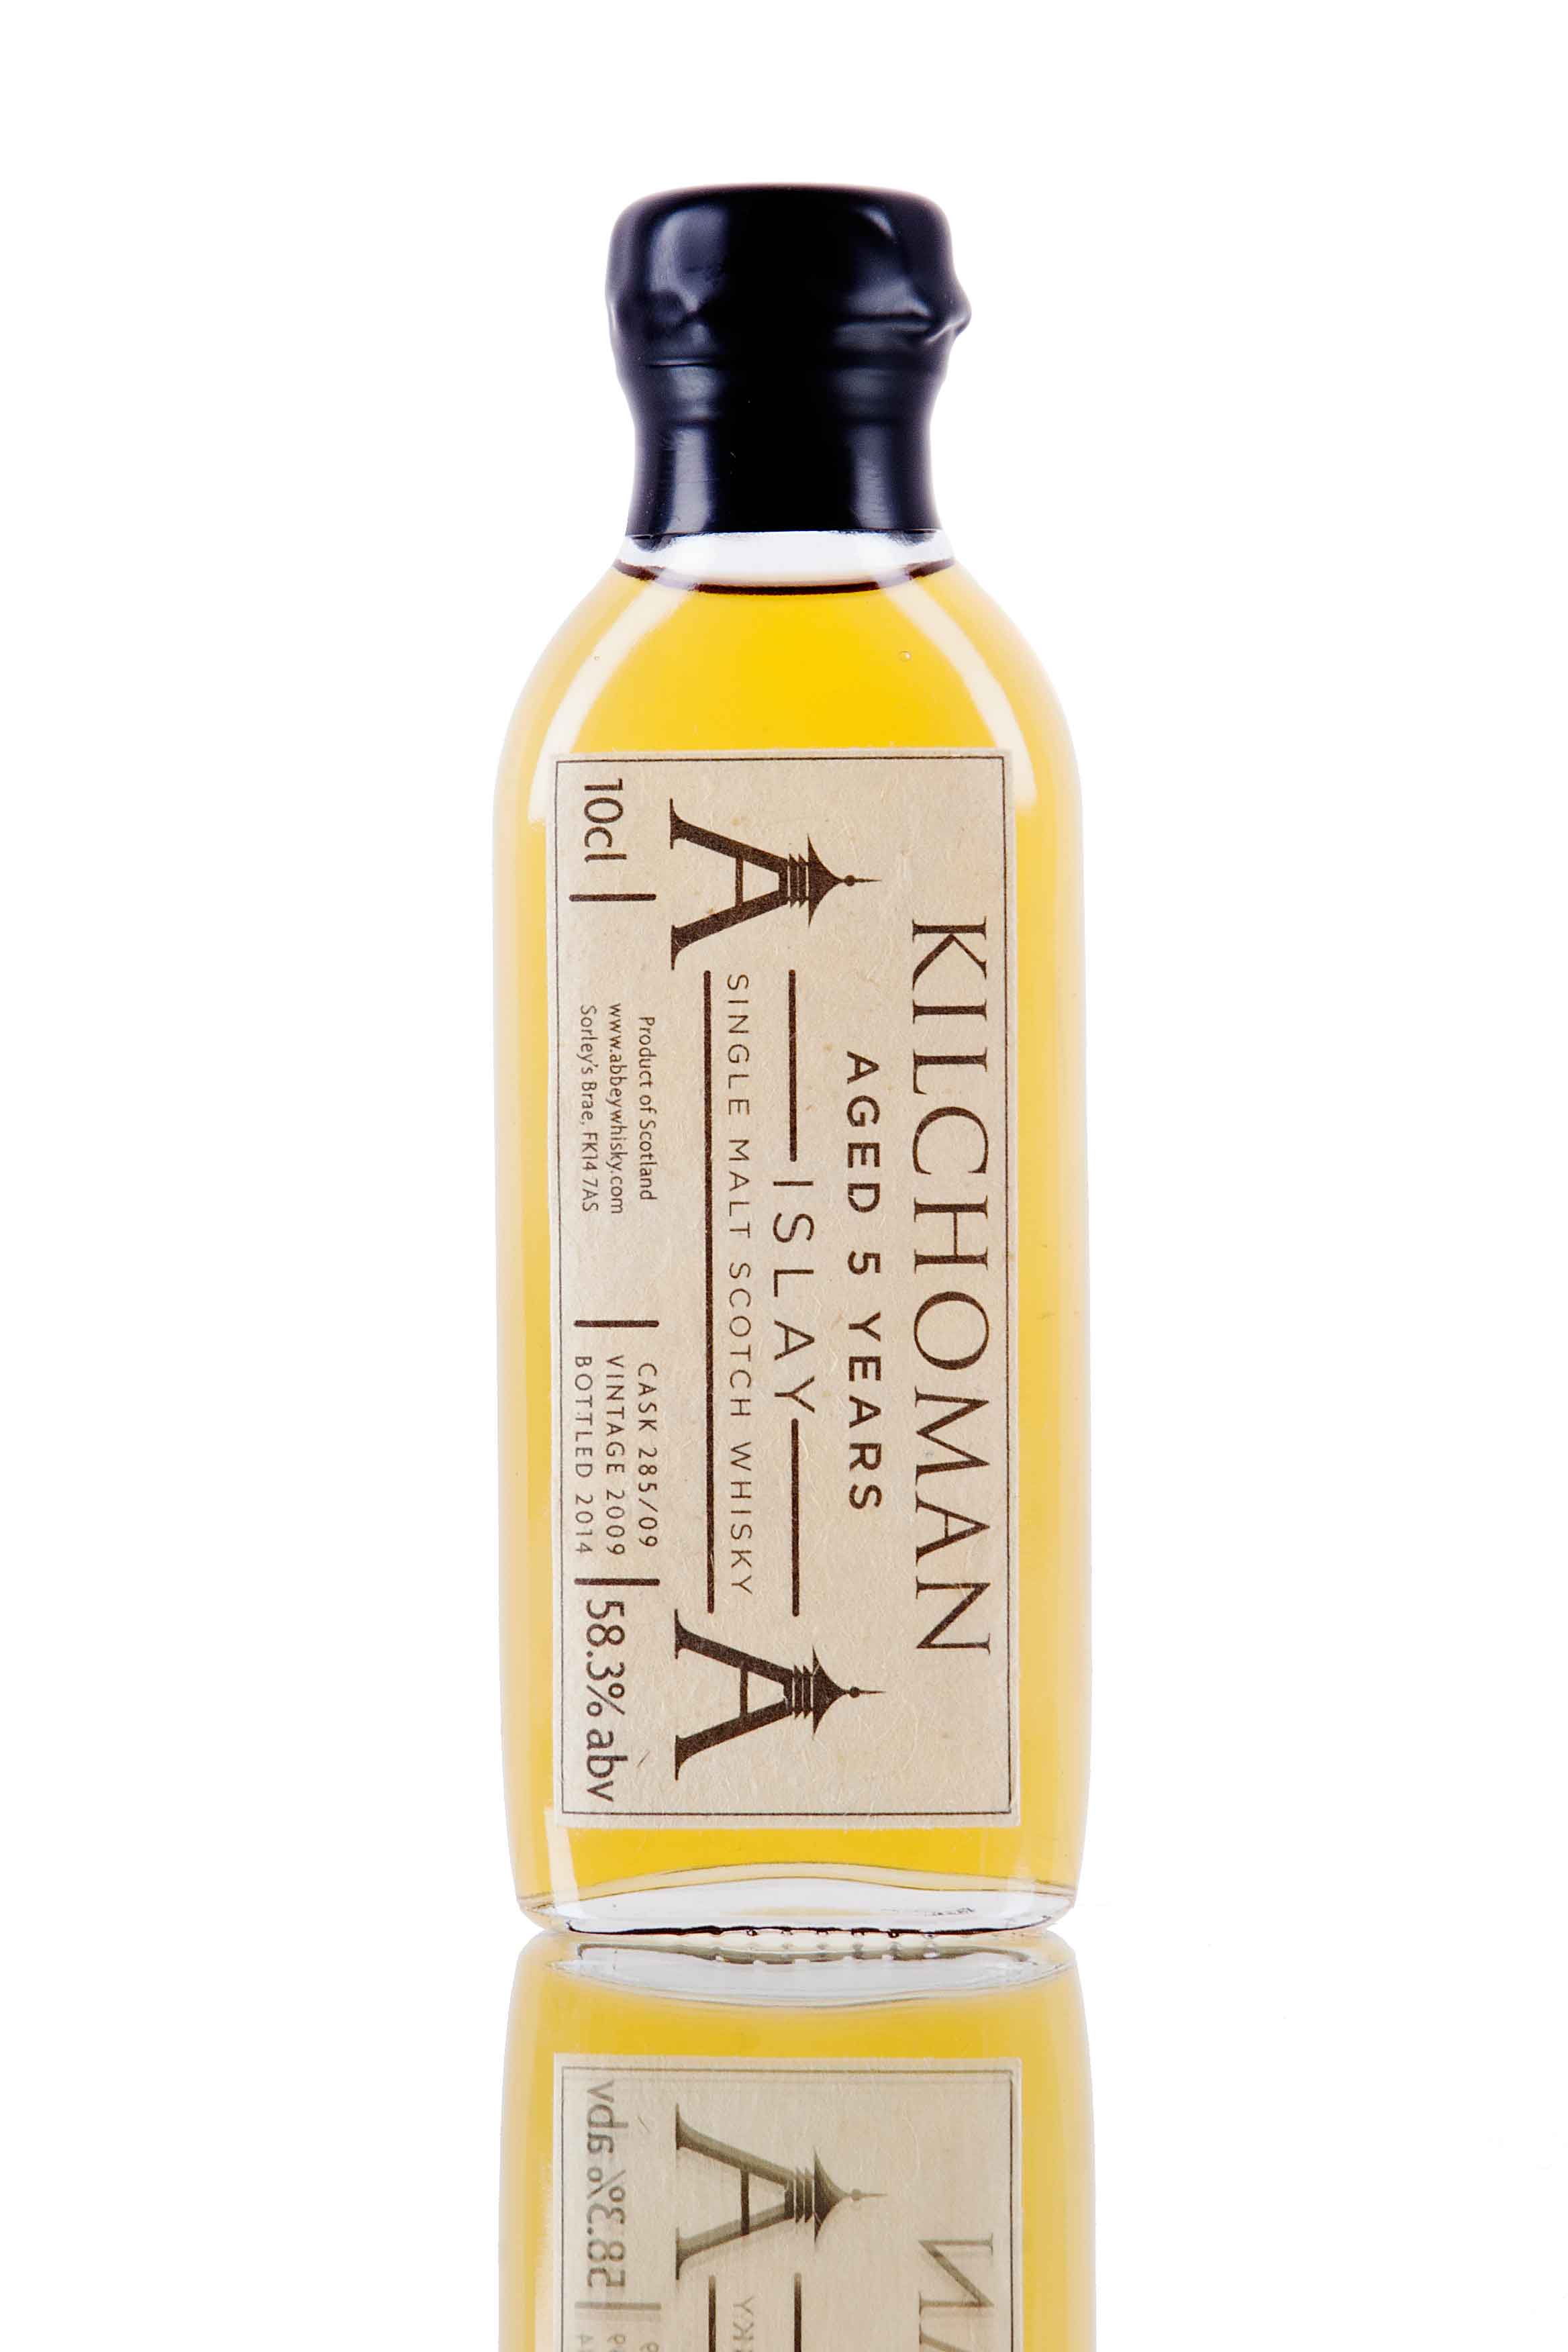 Kilchoman 2009 PX Finish Single Cask / 10cl Whisky Sample